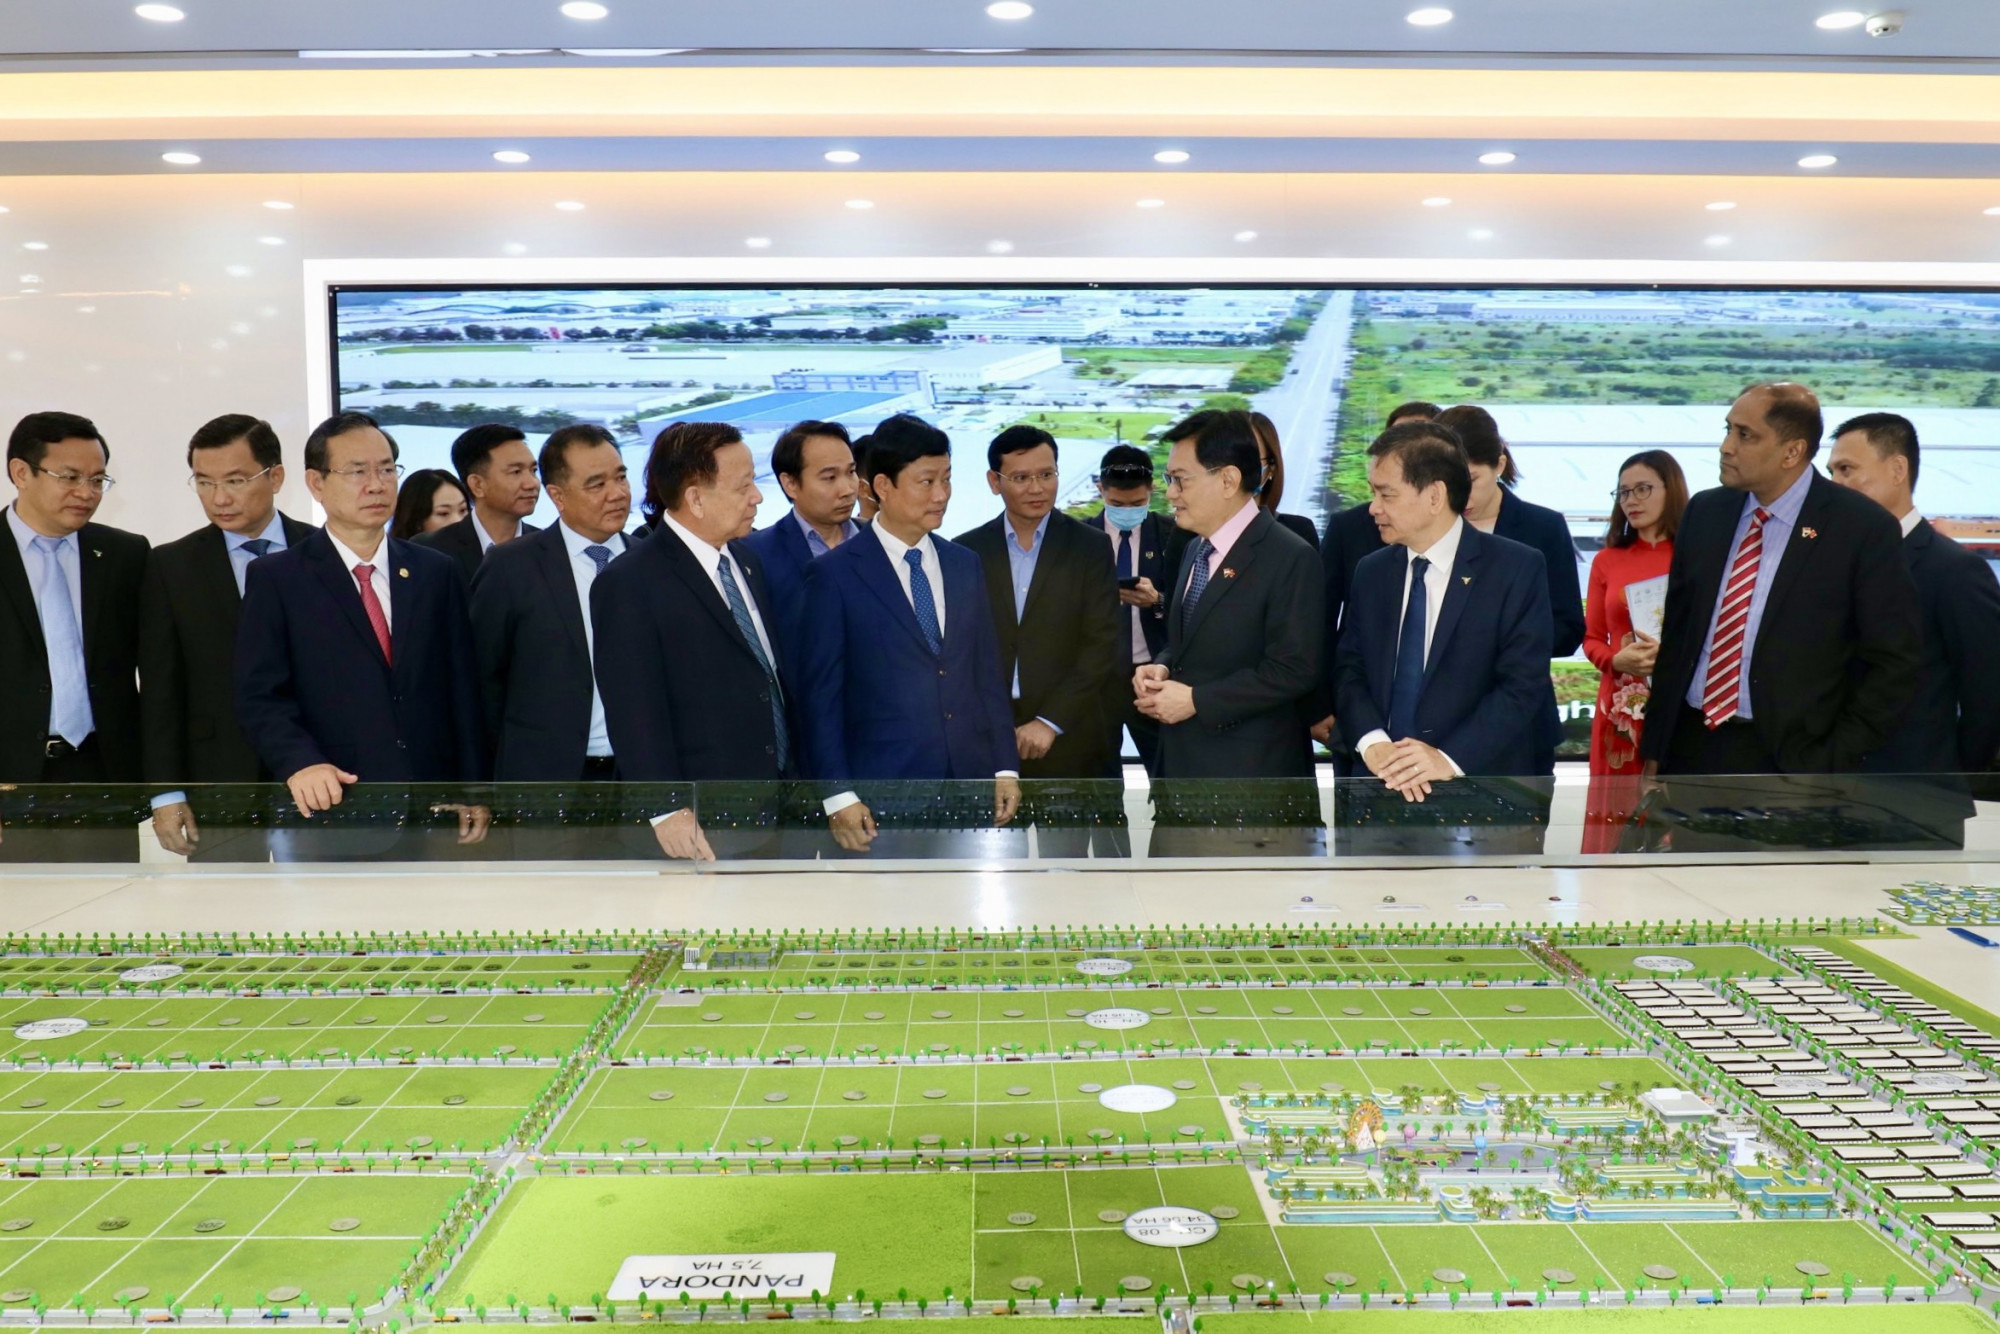 VSIP 1 là dự án đầu tiên hình thành trên nền tảng tình hữu nghị và hợp tác kinh tế giữa Việt Nam và Singapore 